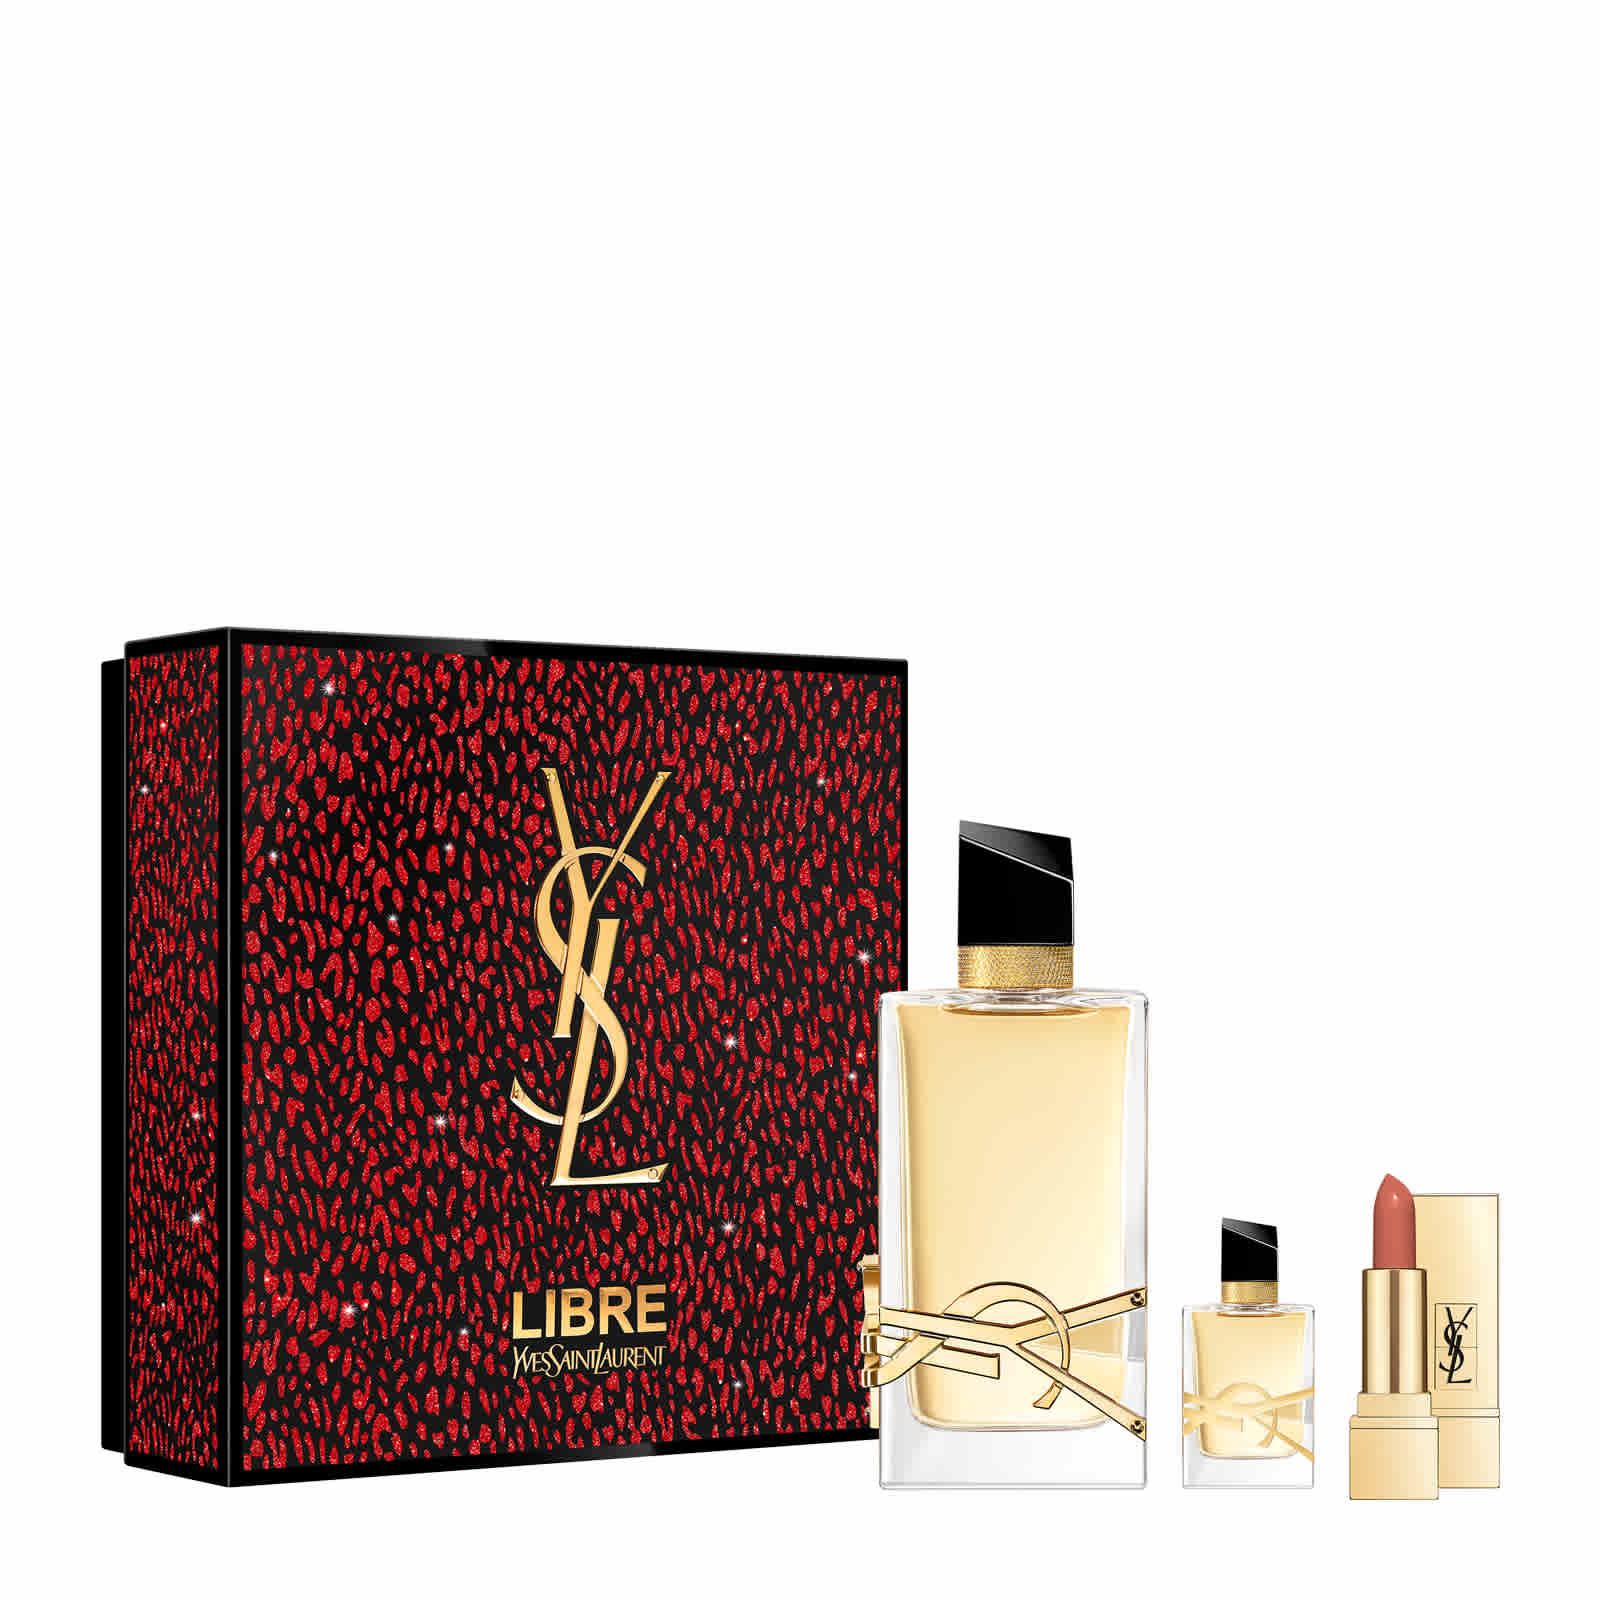 YSL Beauty Libre Eau de Parfum 90ml Gift Set £75.00 using